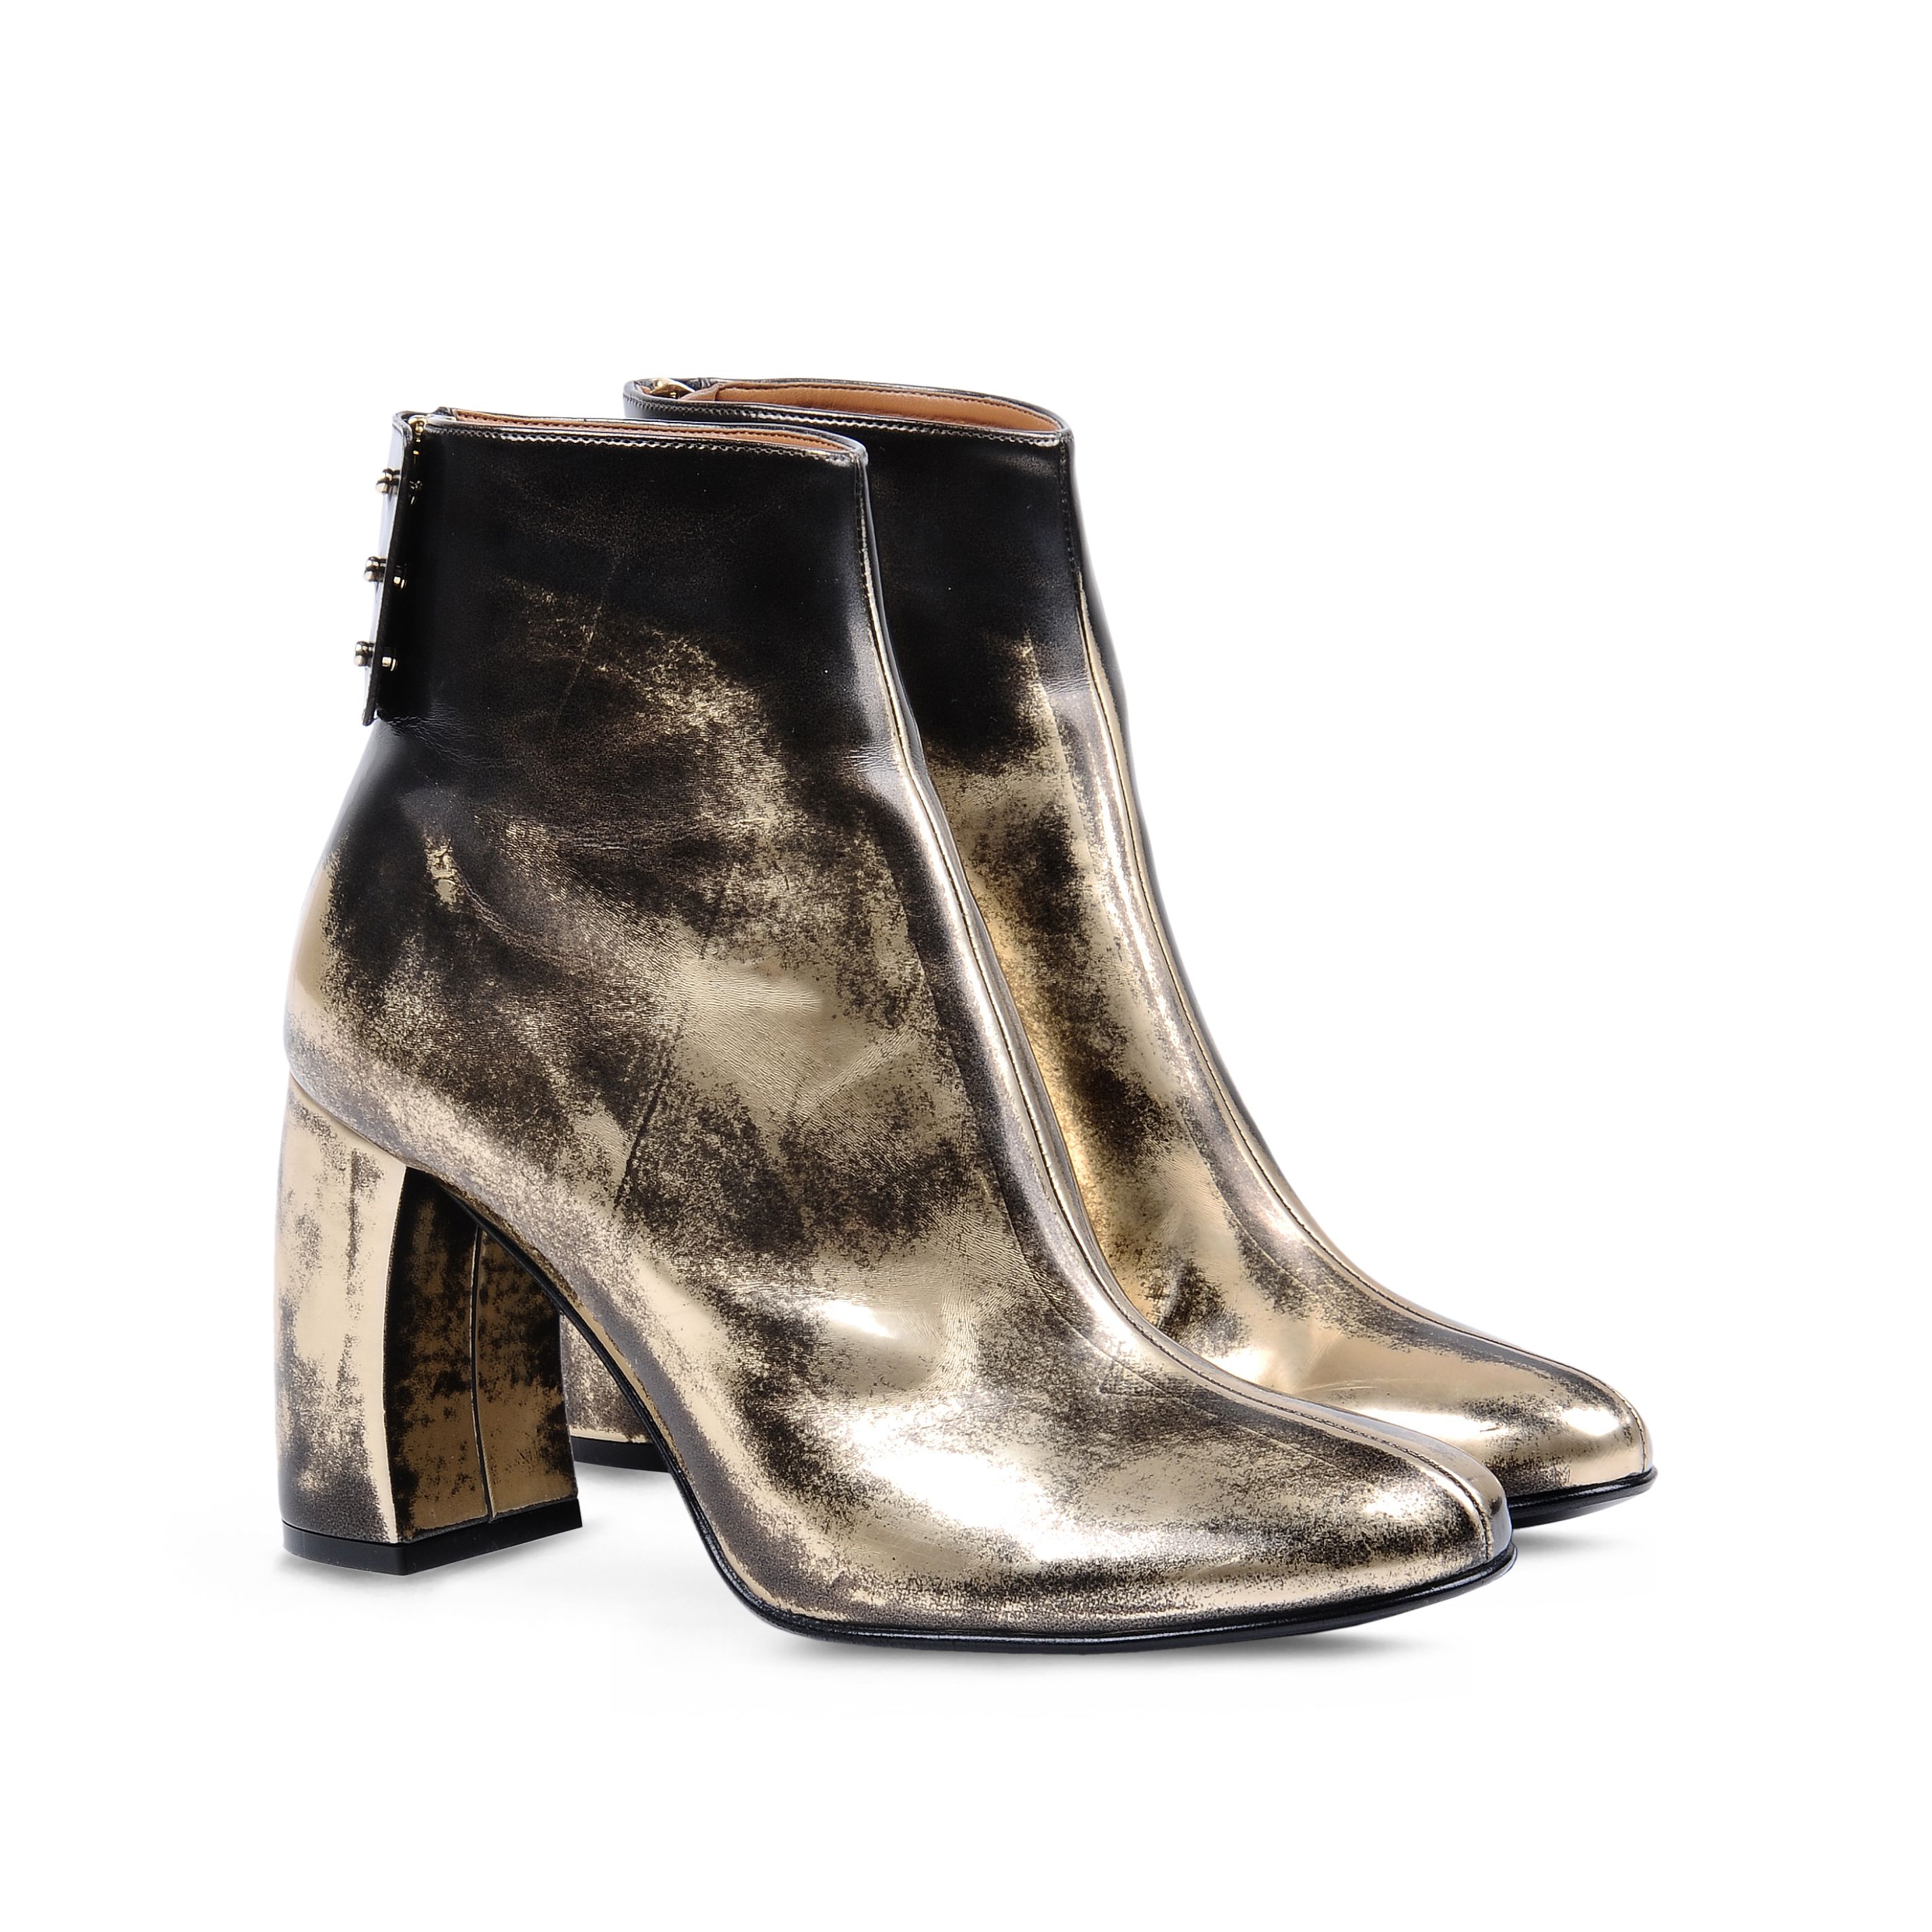 15_Ankle boots Stella McCartney in oro spazzolato con punta tonda, tacco a forma di mezzo cilindro e chiusura con zip e bottoni con patta (675 € sullo store online)